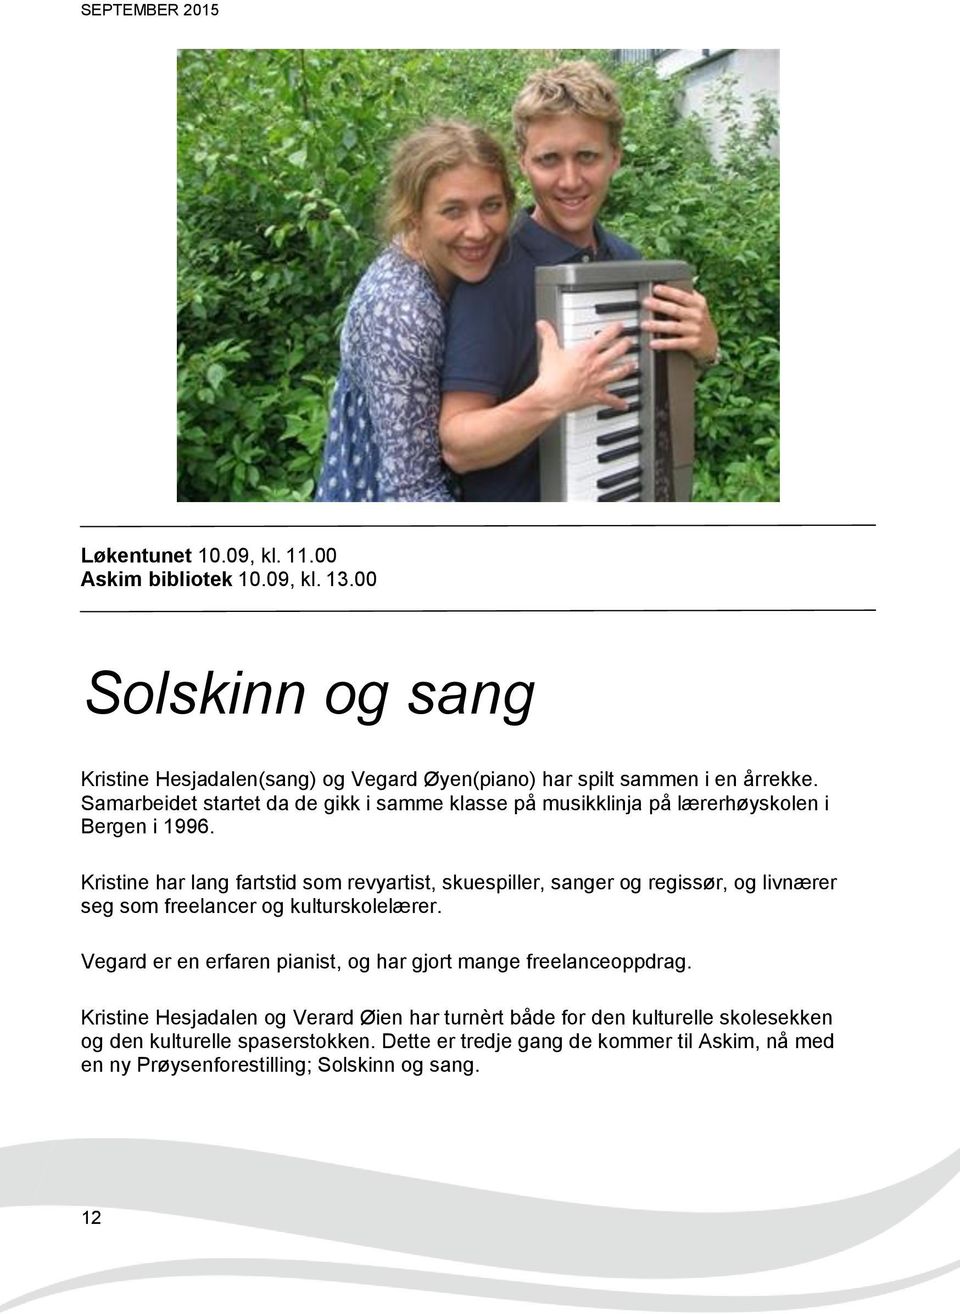 Samarbeidet startet da de gikk i samme klasse på musikklinja på lærerhøyskolen i Bergen i 1996.